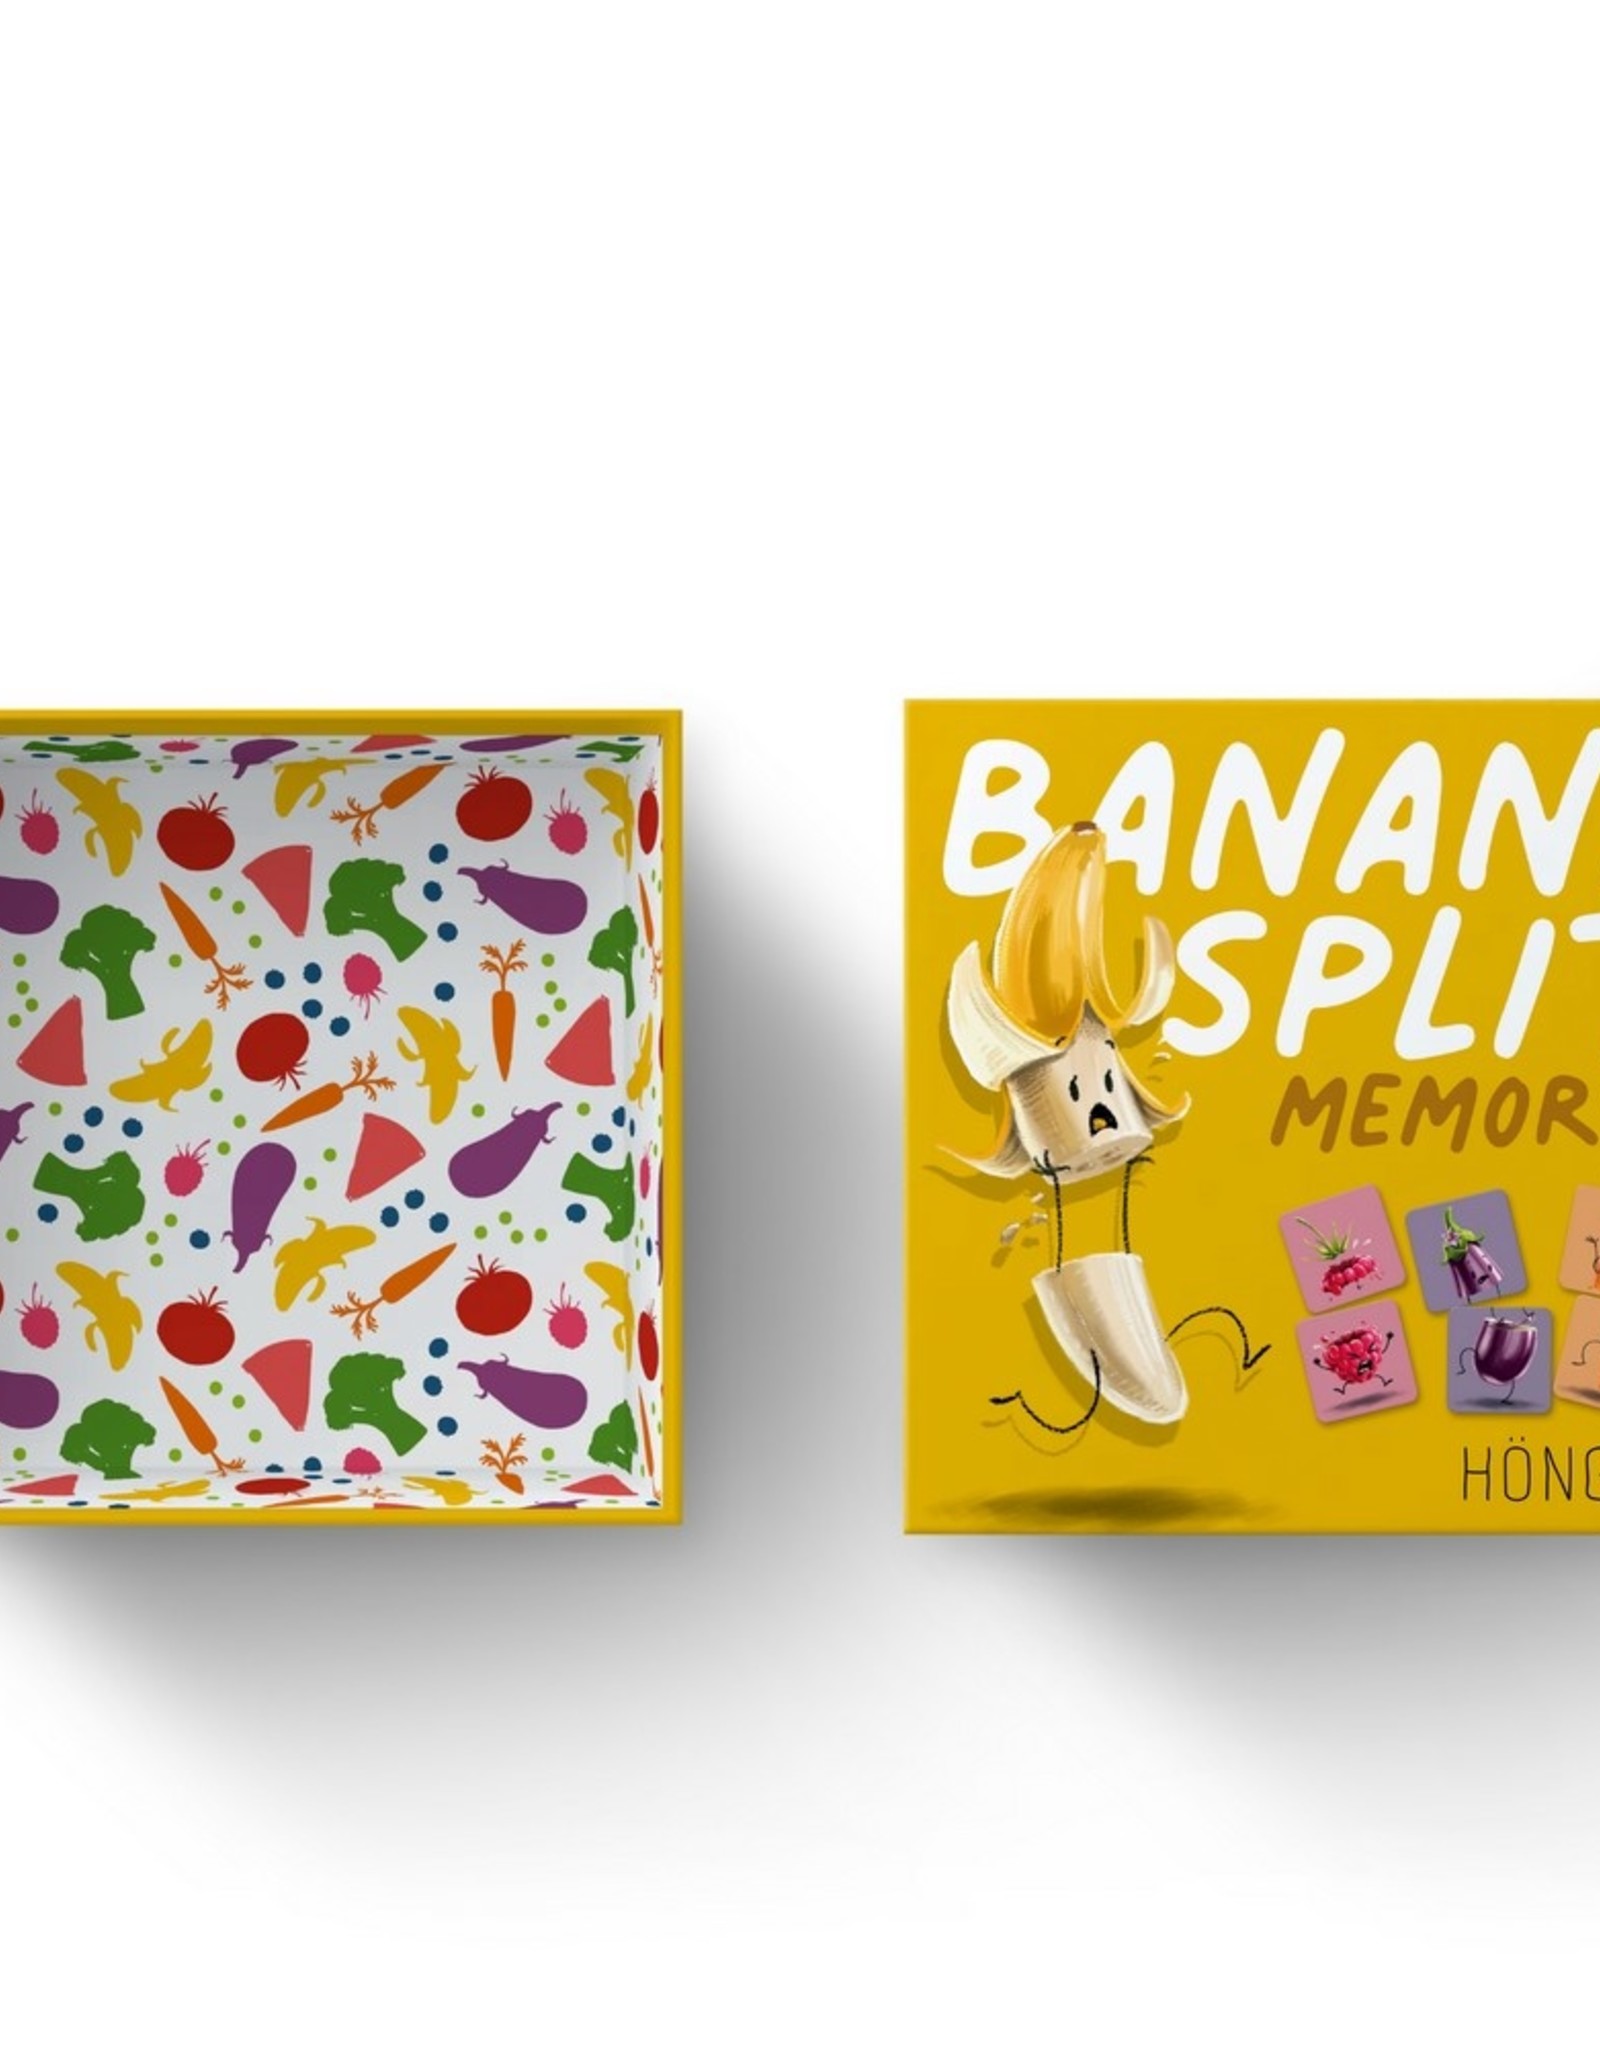 Höngry playful fruit & veg Banana Split Memory